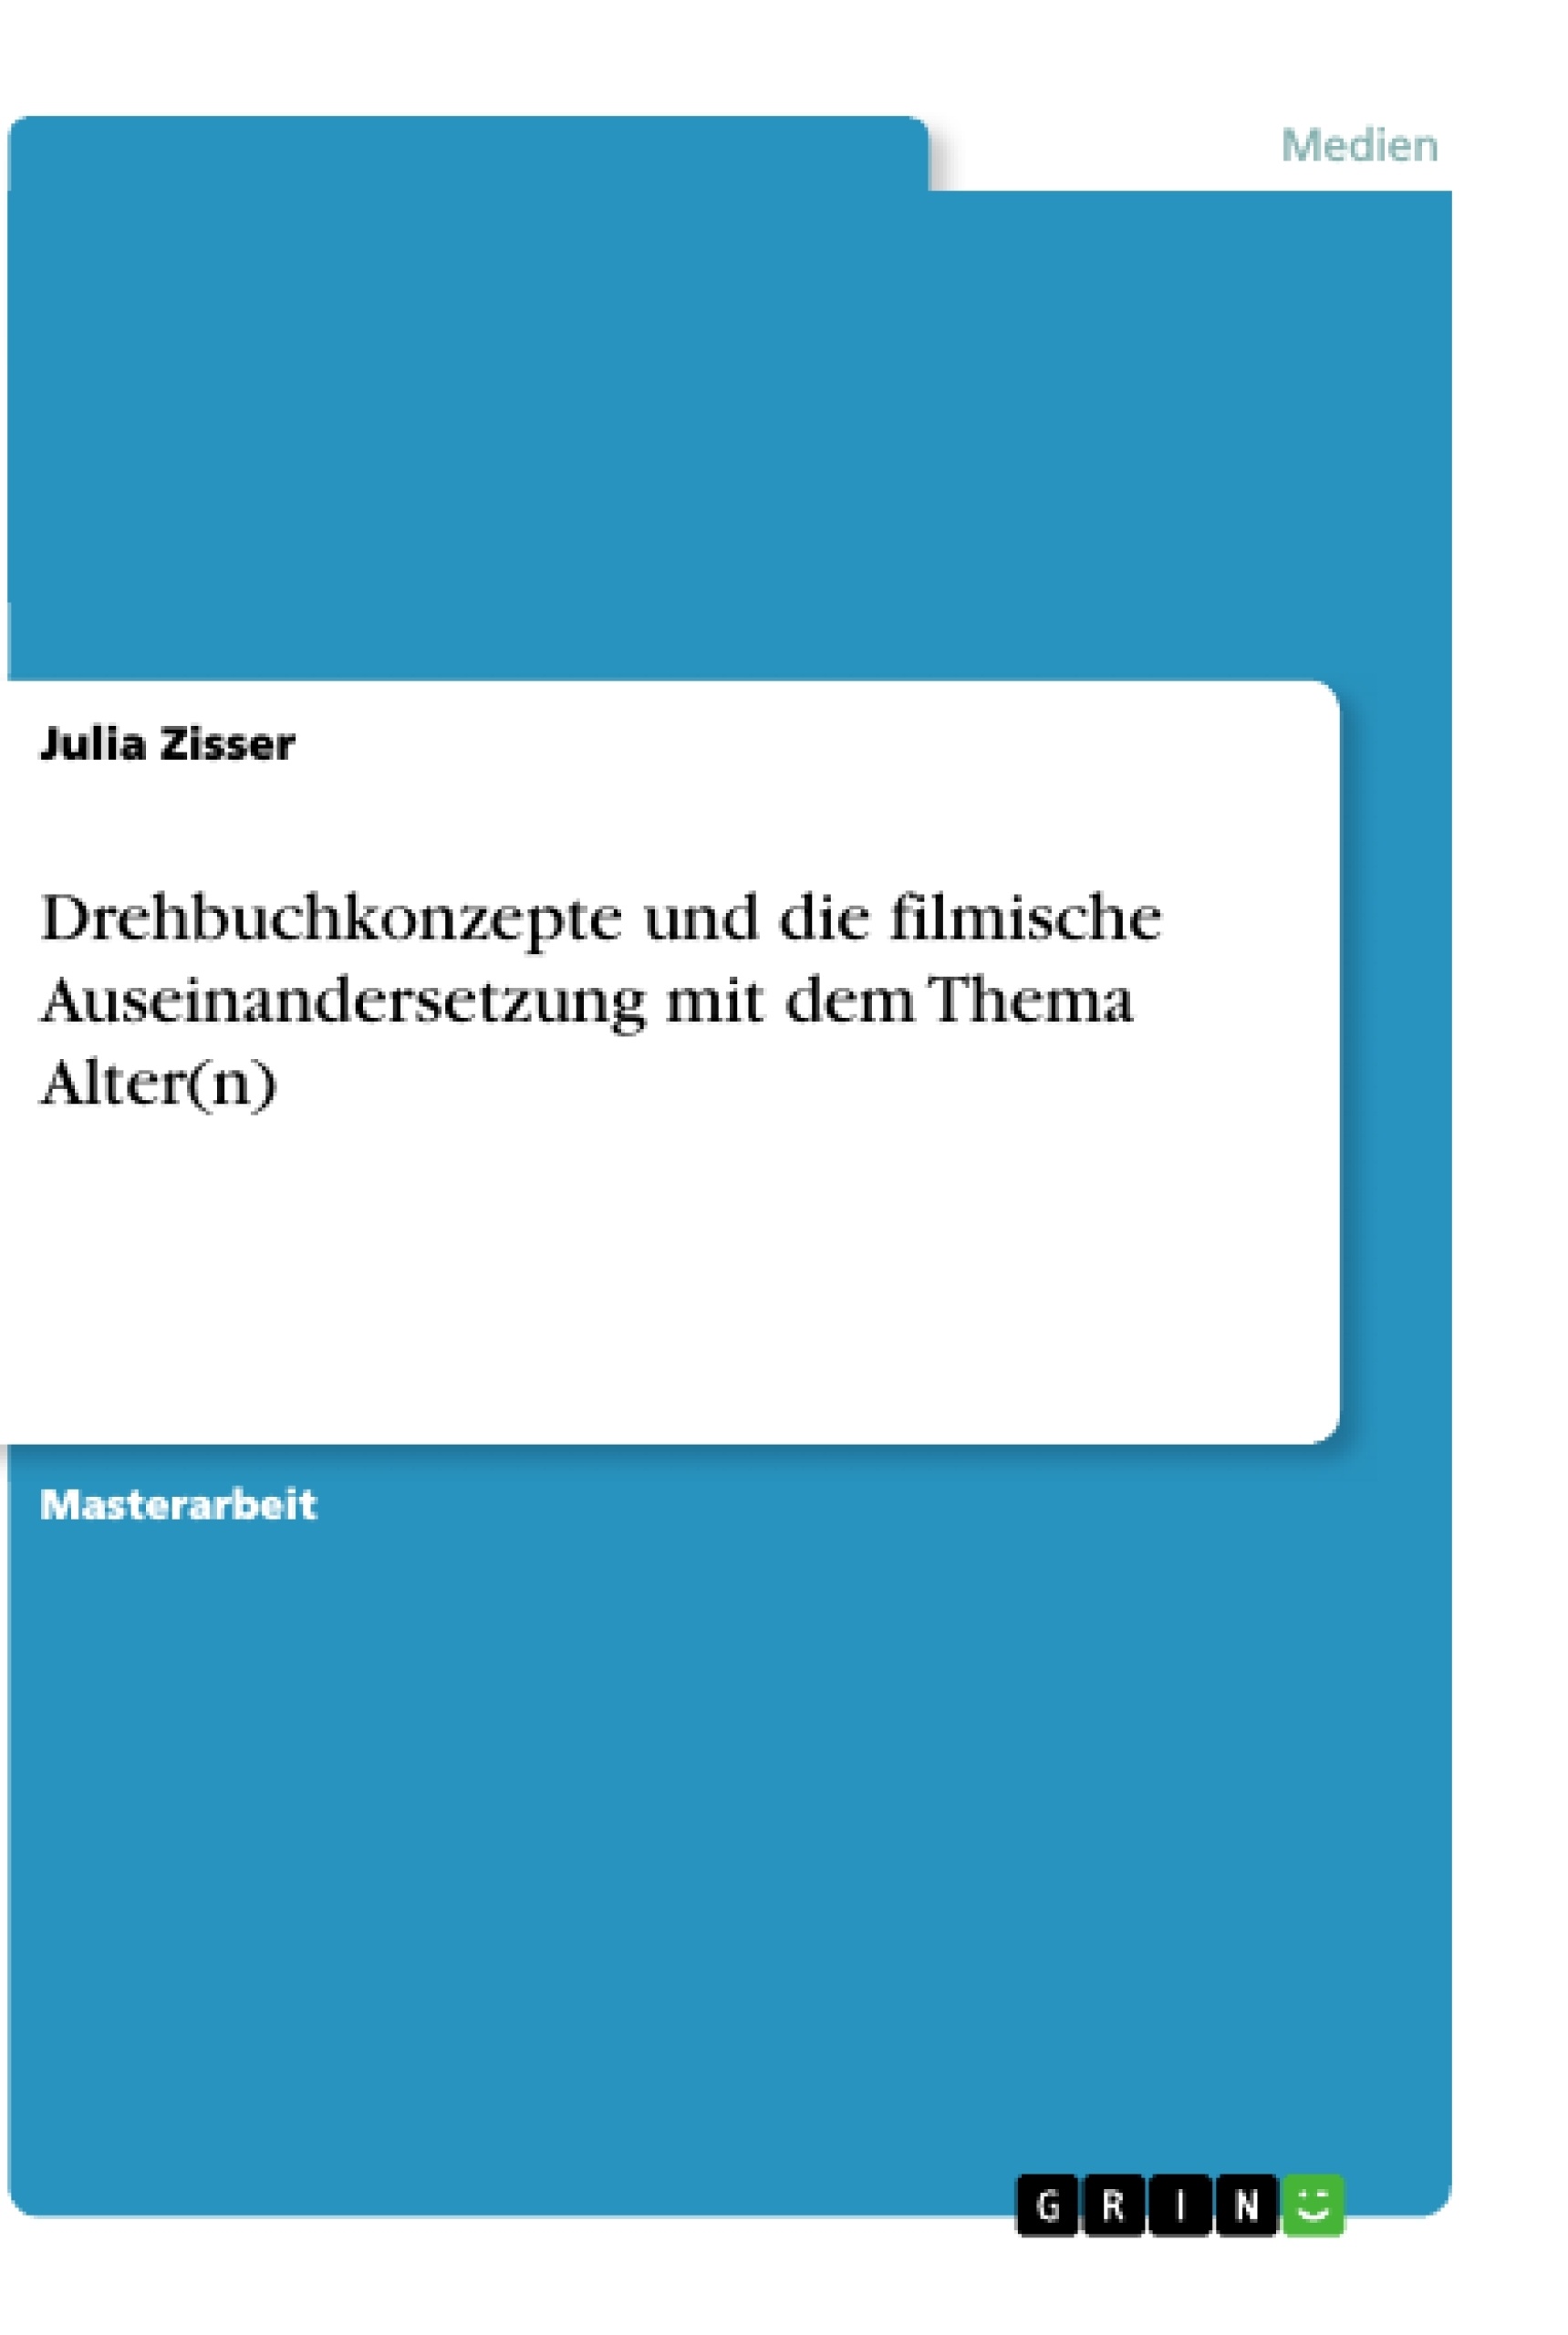 Titre: Drehbuchkonzepte und die filmische Auseinandersetzung mit dem Thema Alter(n)